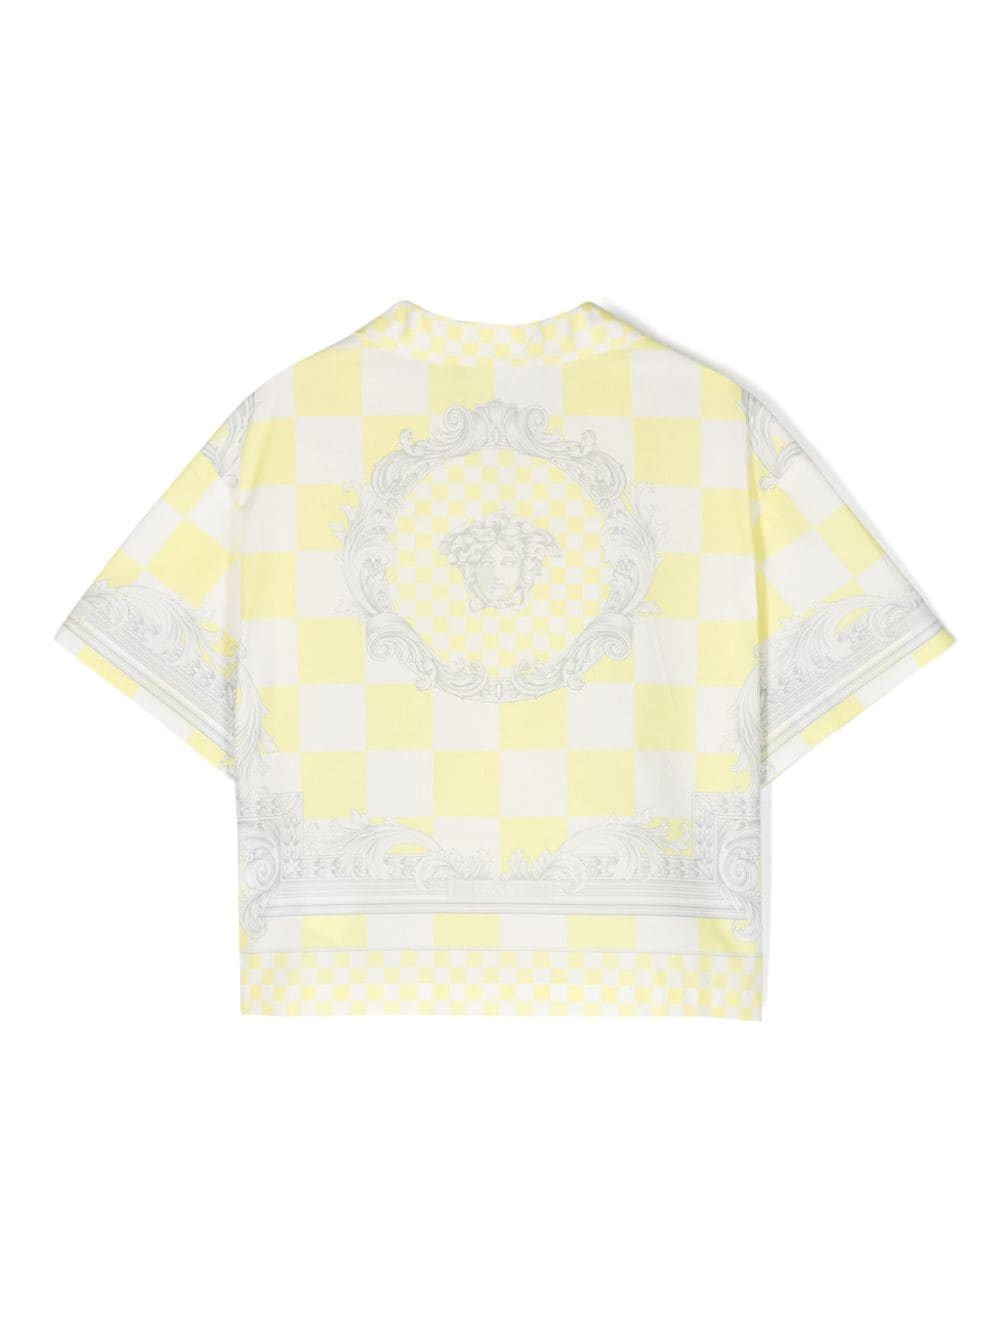 Camicia giallo/bianco bambino